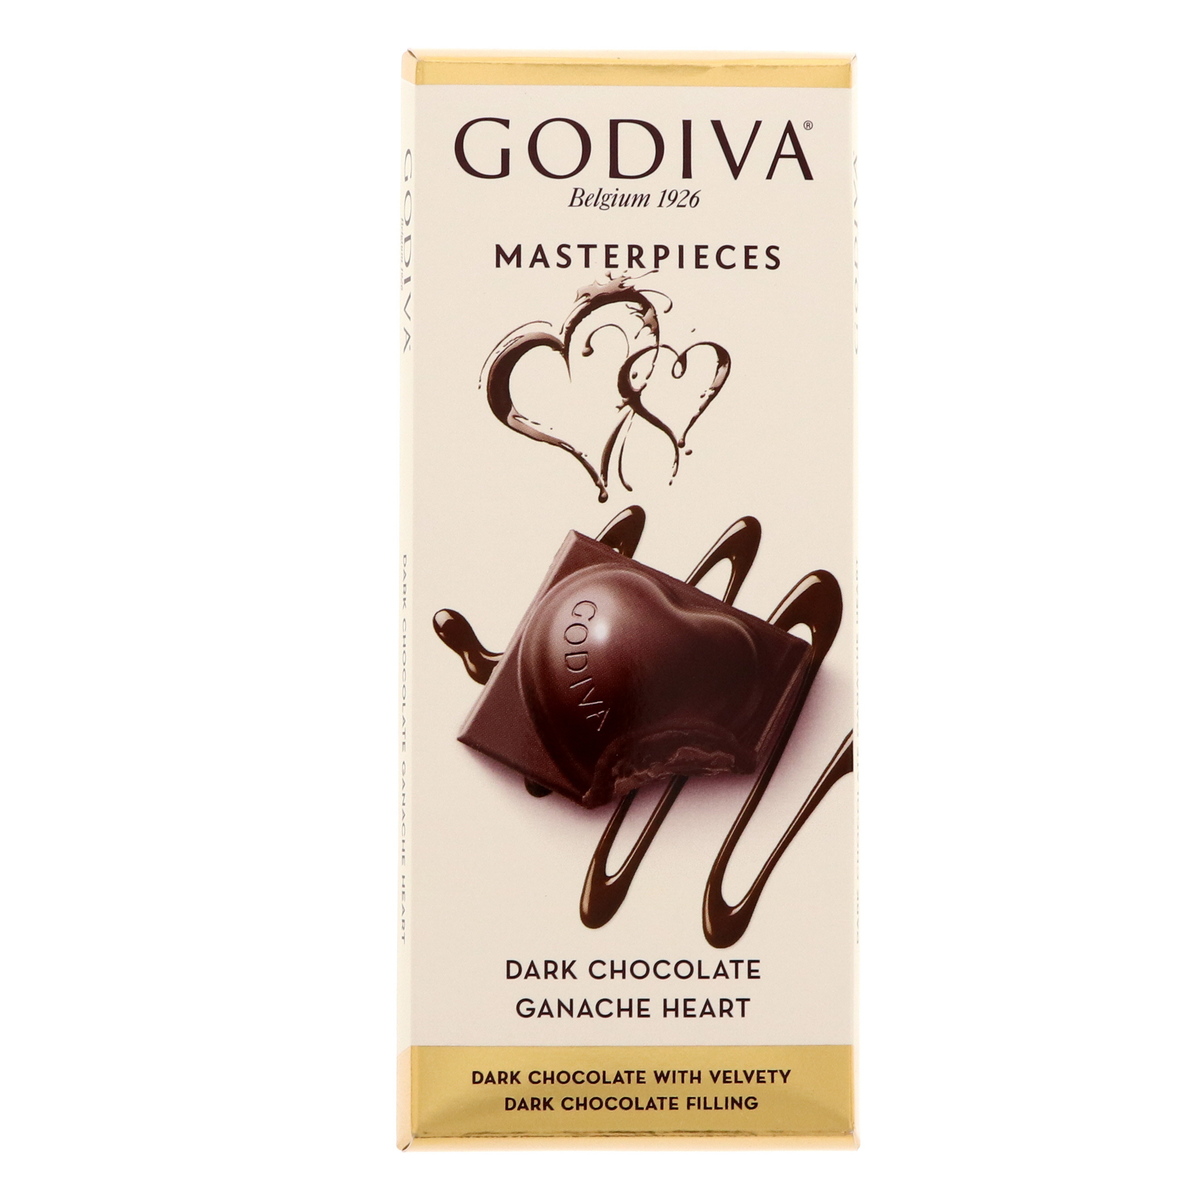 Godiva Master Pieces Dark Chocolate Ganache Heart 86g